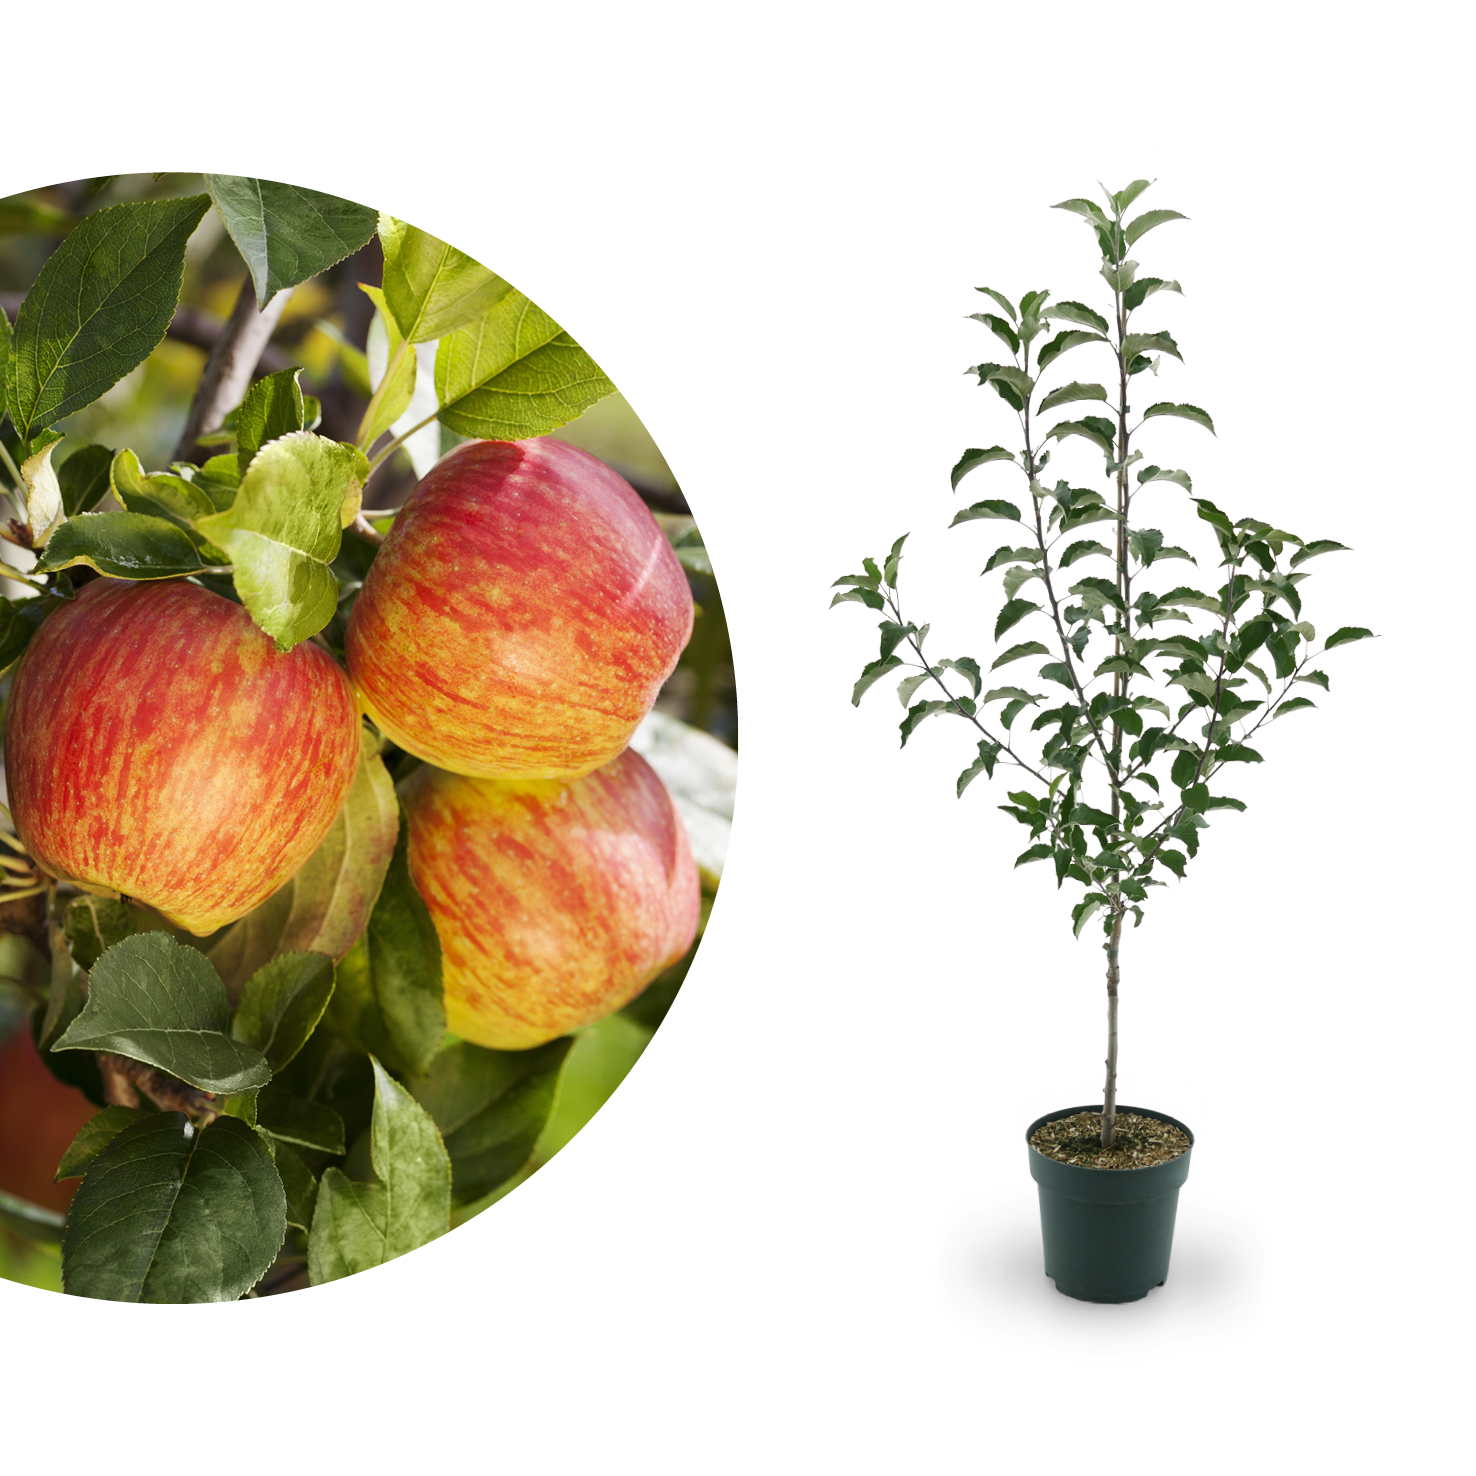 Äpfel für Allergiker: Verträgliche Plantura Sorten 